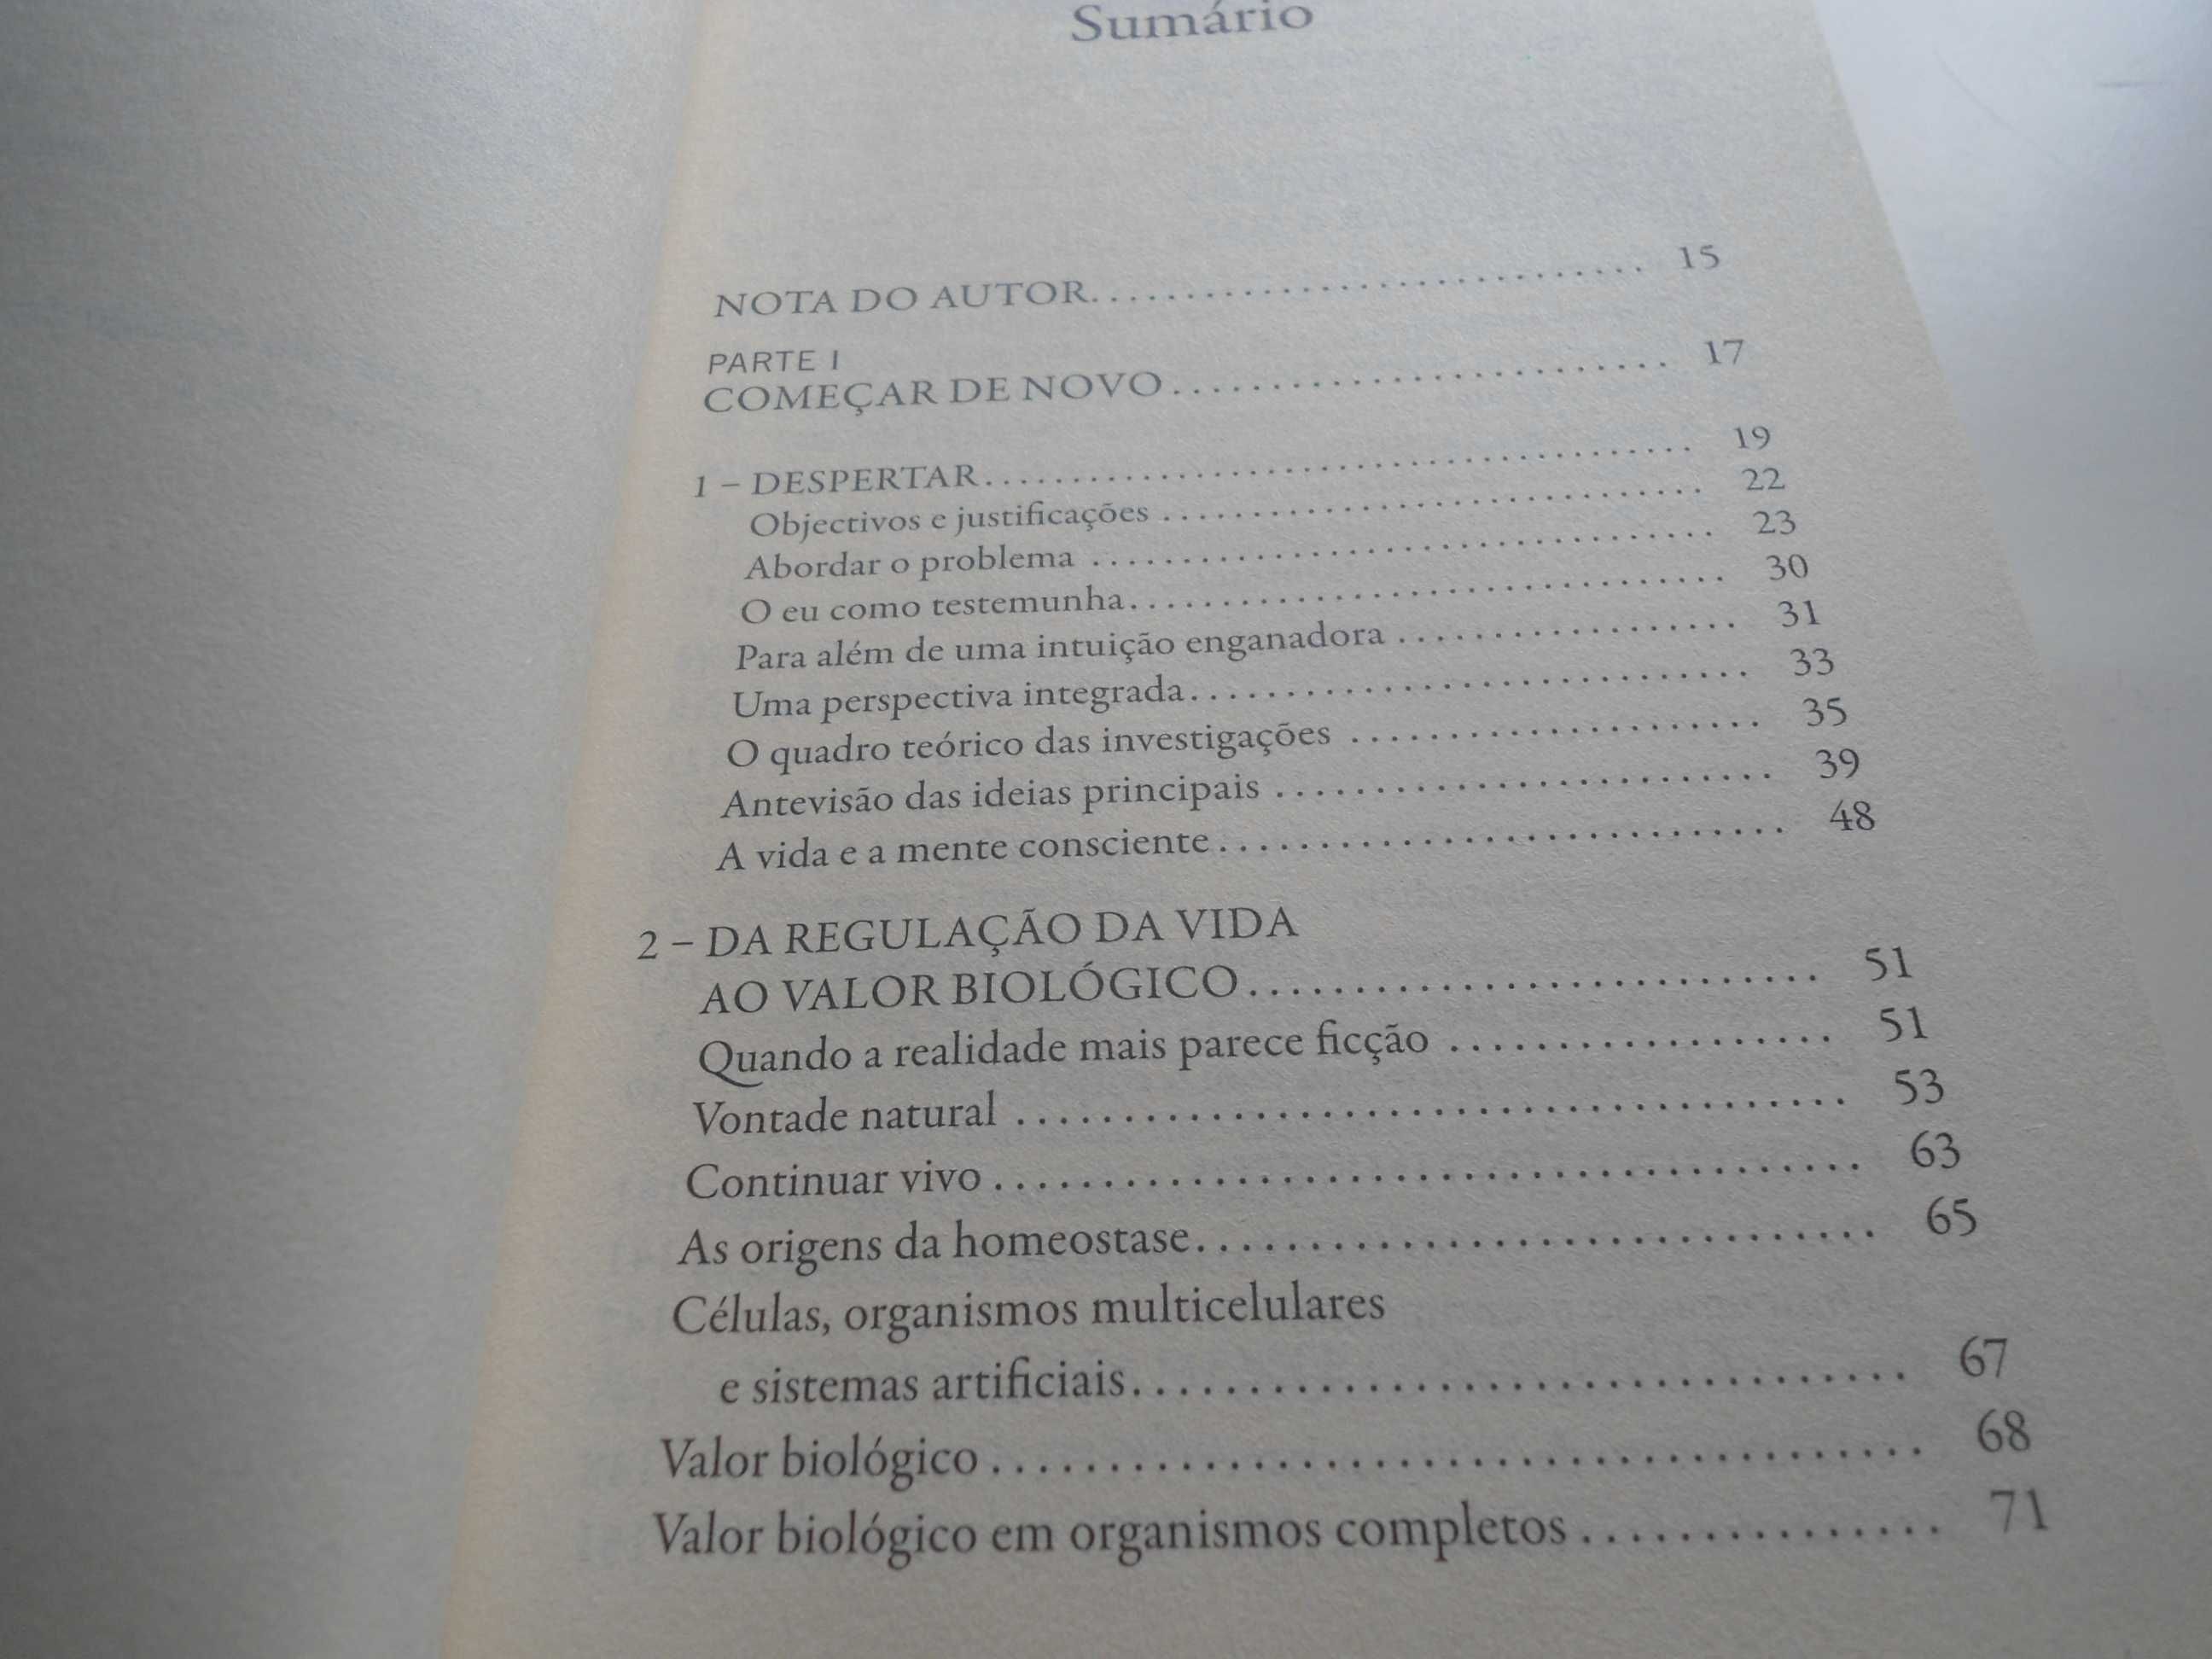 O Livro da Consciência por António Damásio